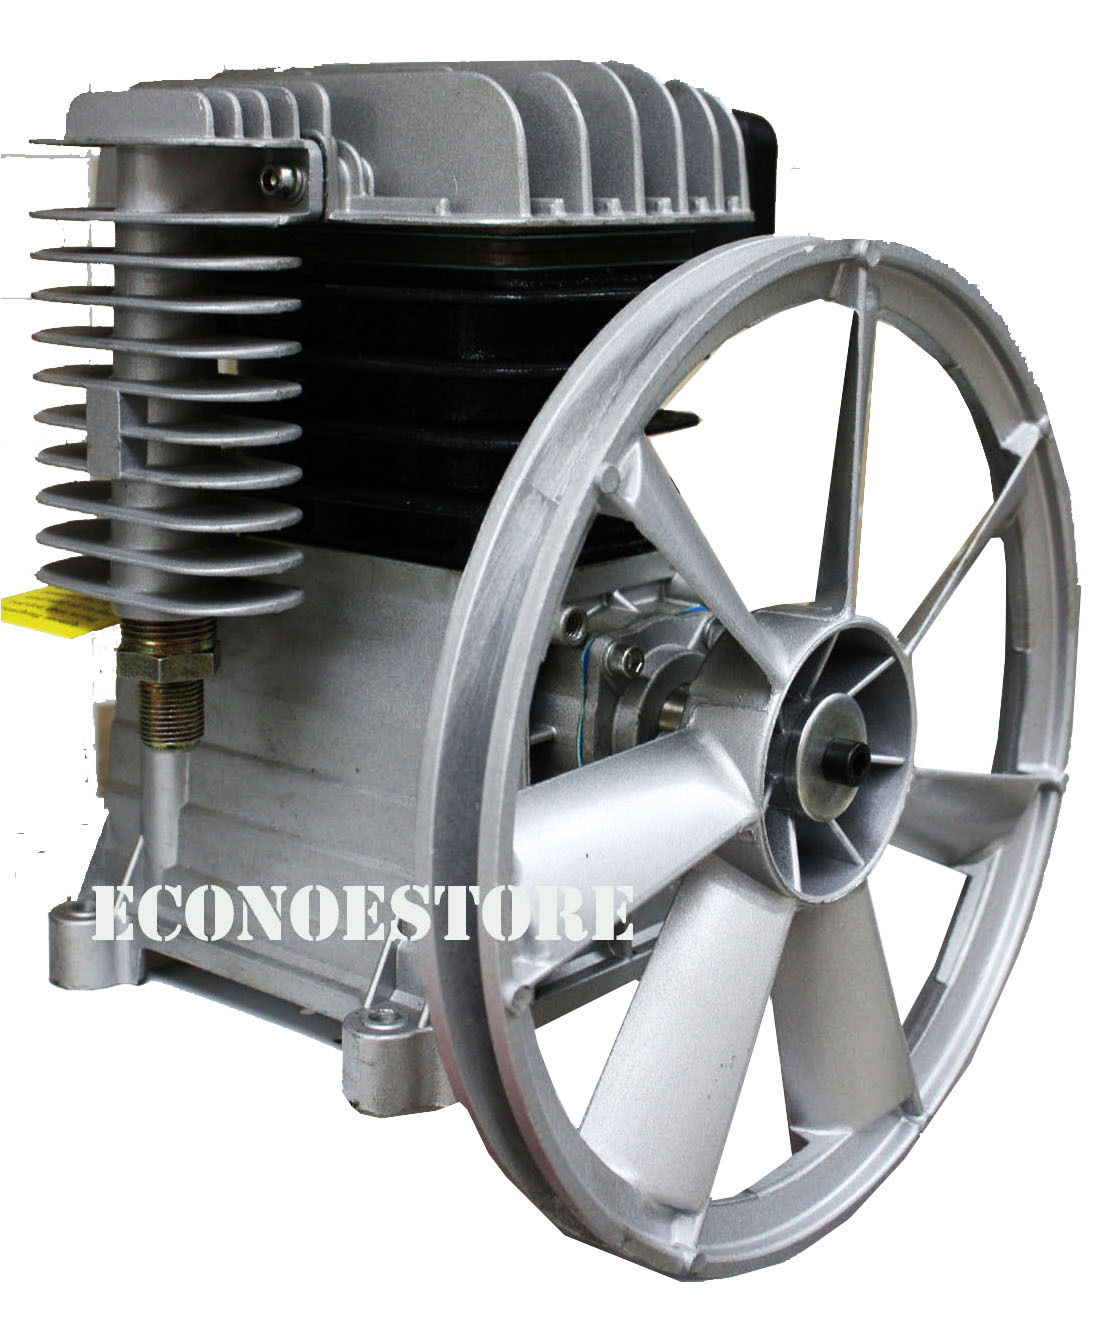 compressor pump